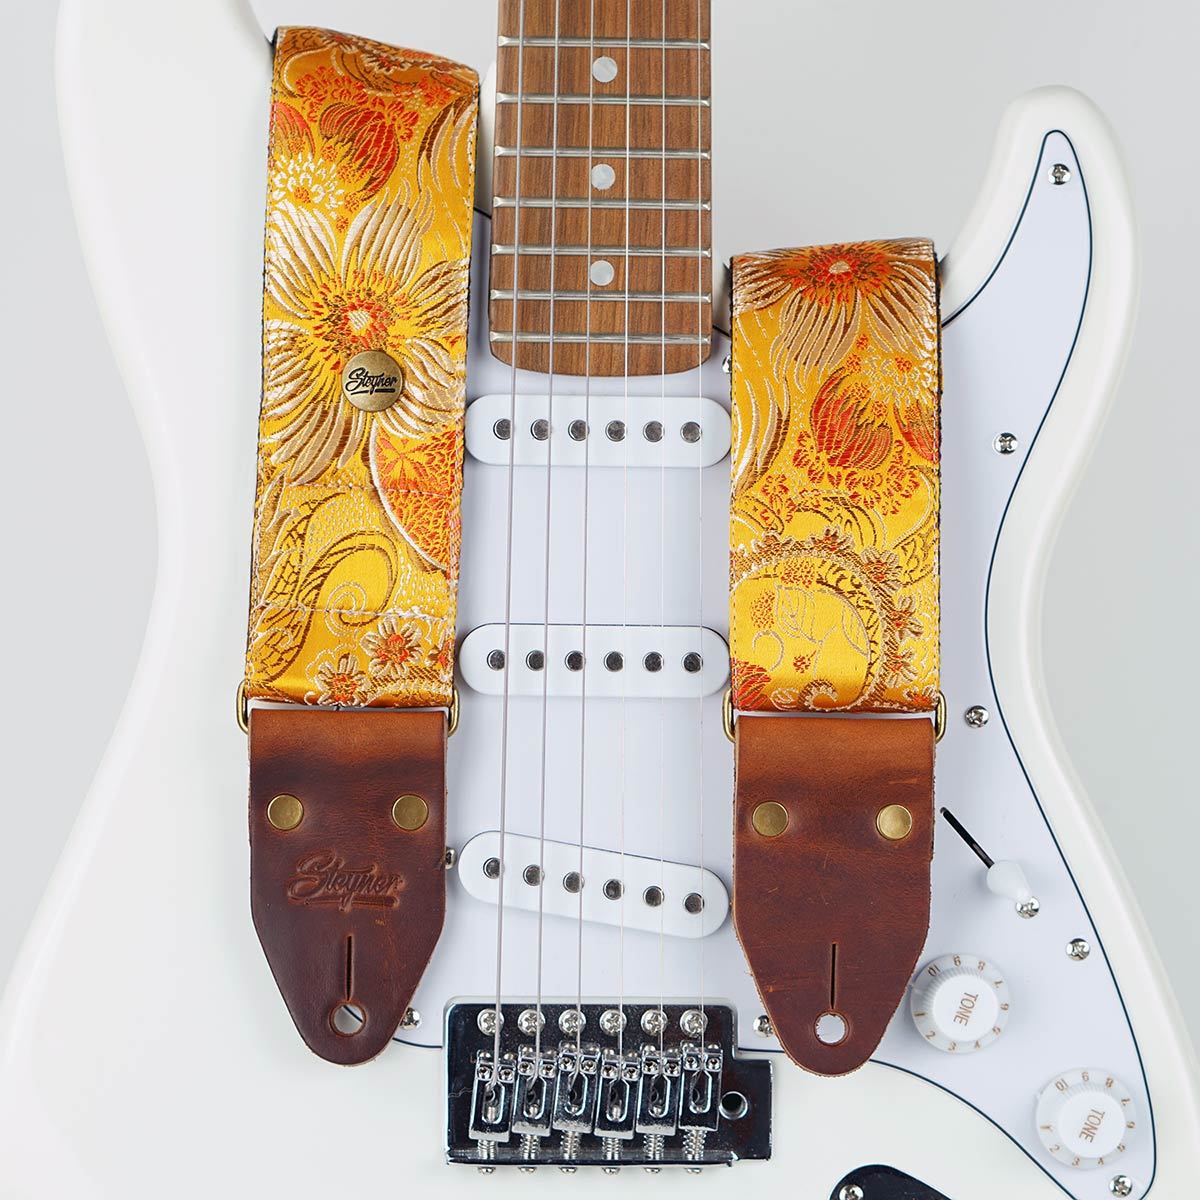 Gitarrengurt gelb im Vintage Stil und buntem Blumen Muster auf einer weissen E-Gitarre